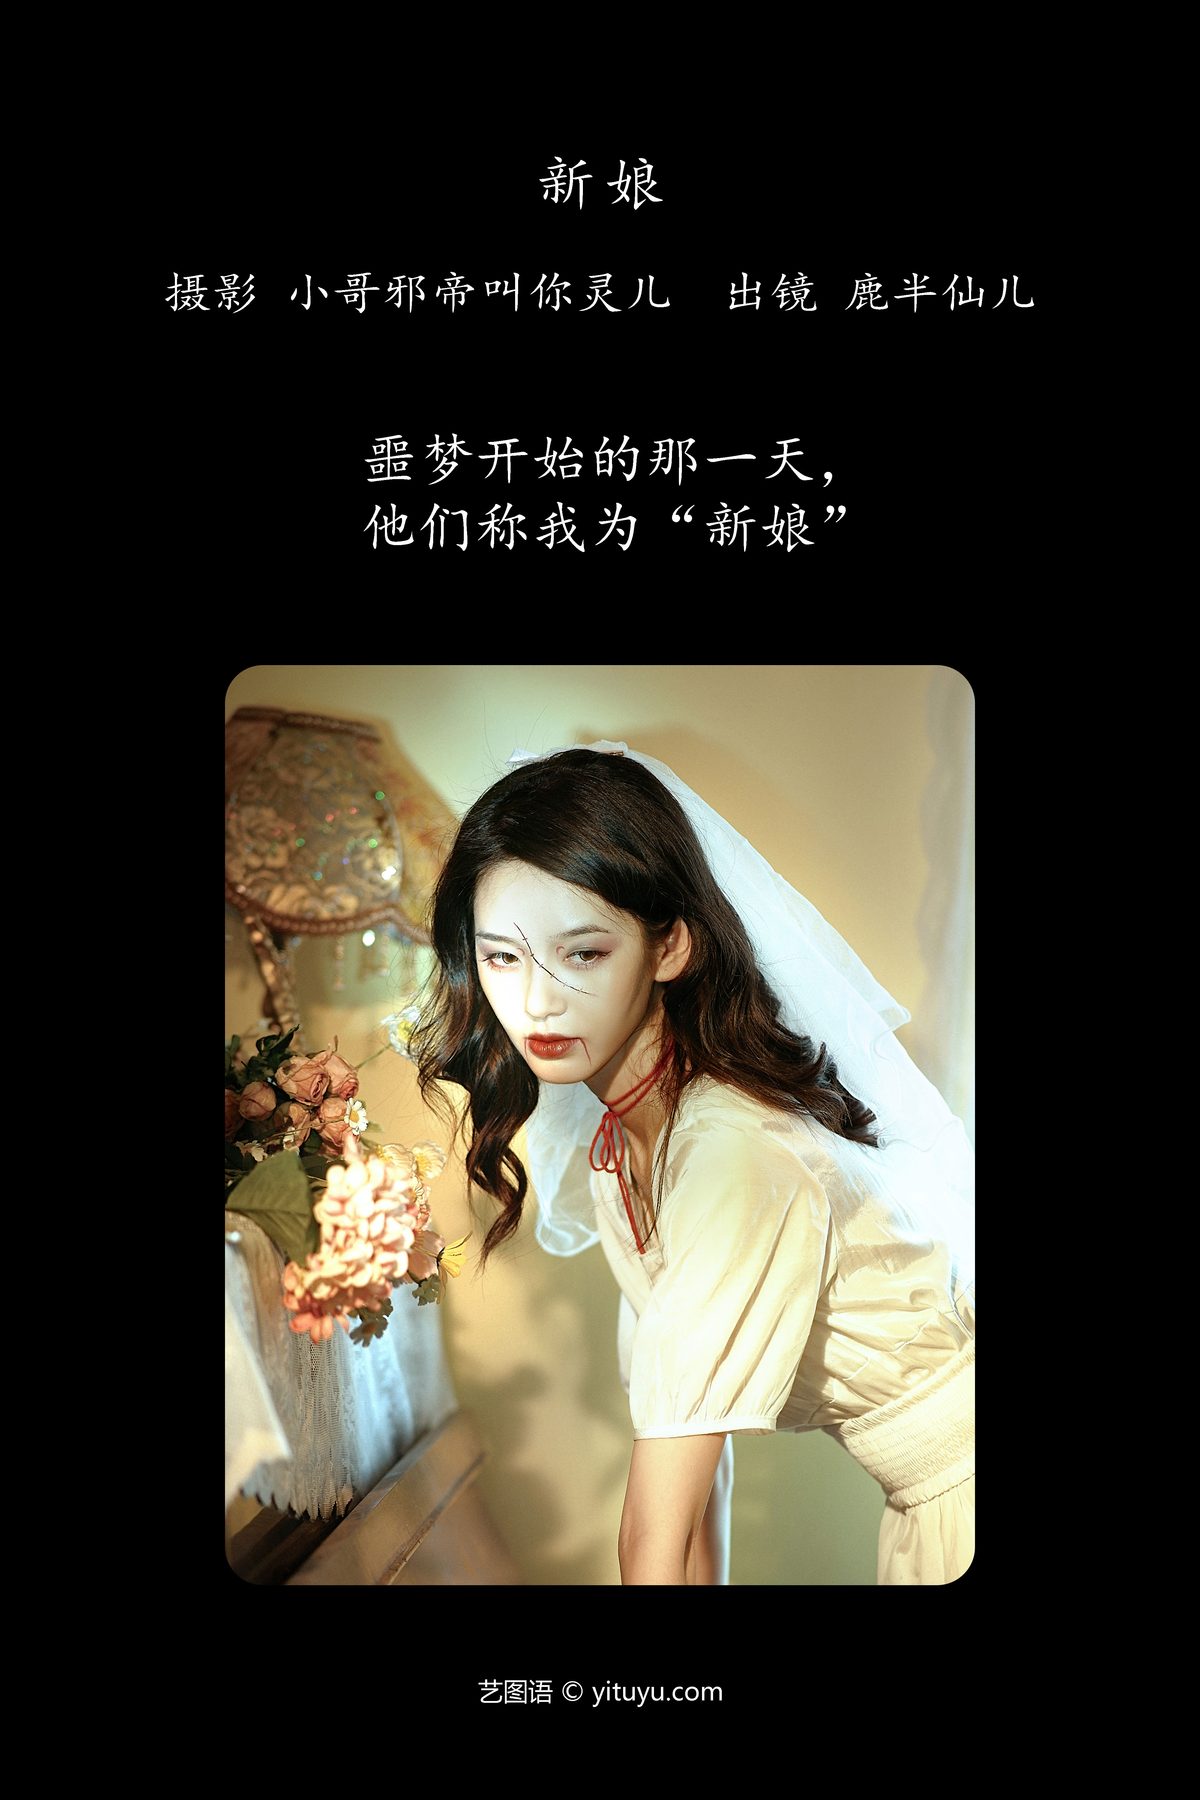 YiTuYu艺图语 Vol 4642 Lu Ban Xian Er 0001 2261571006.jpg